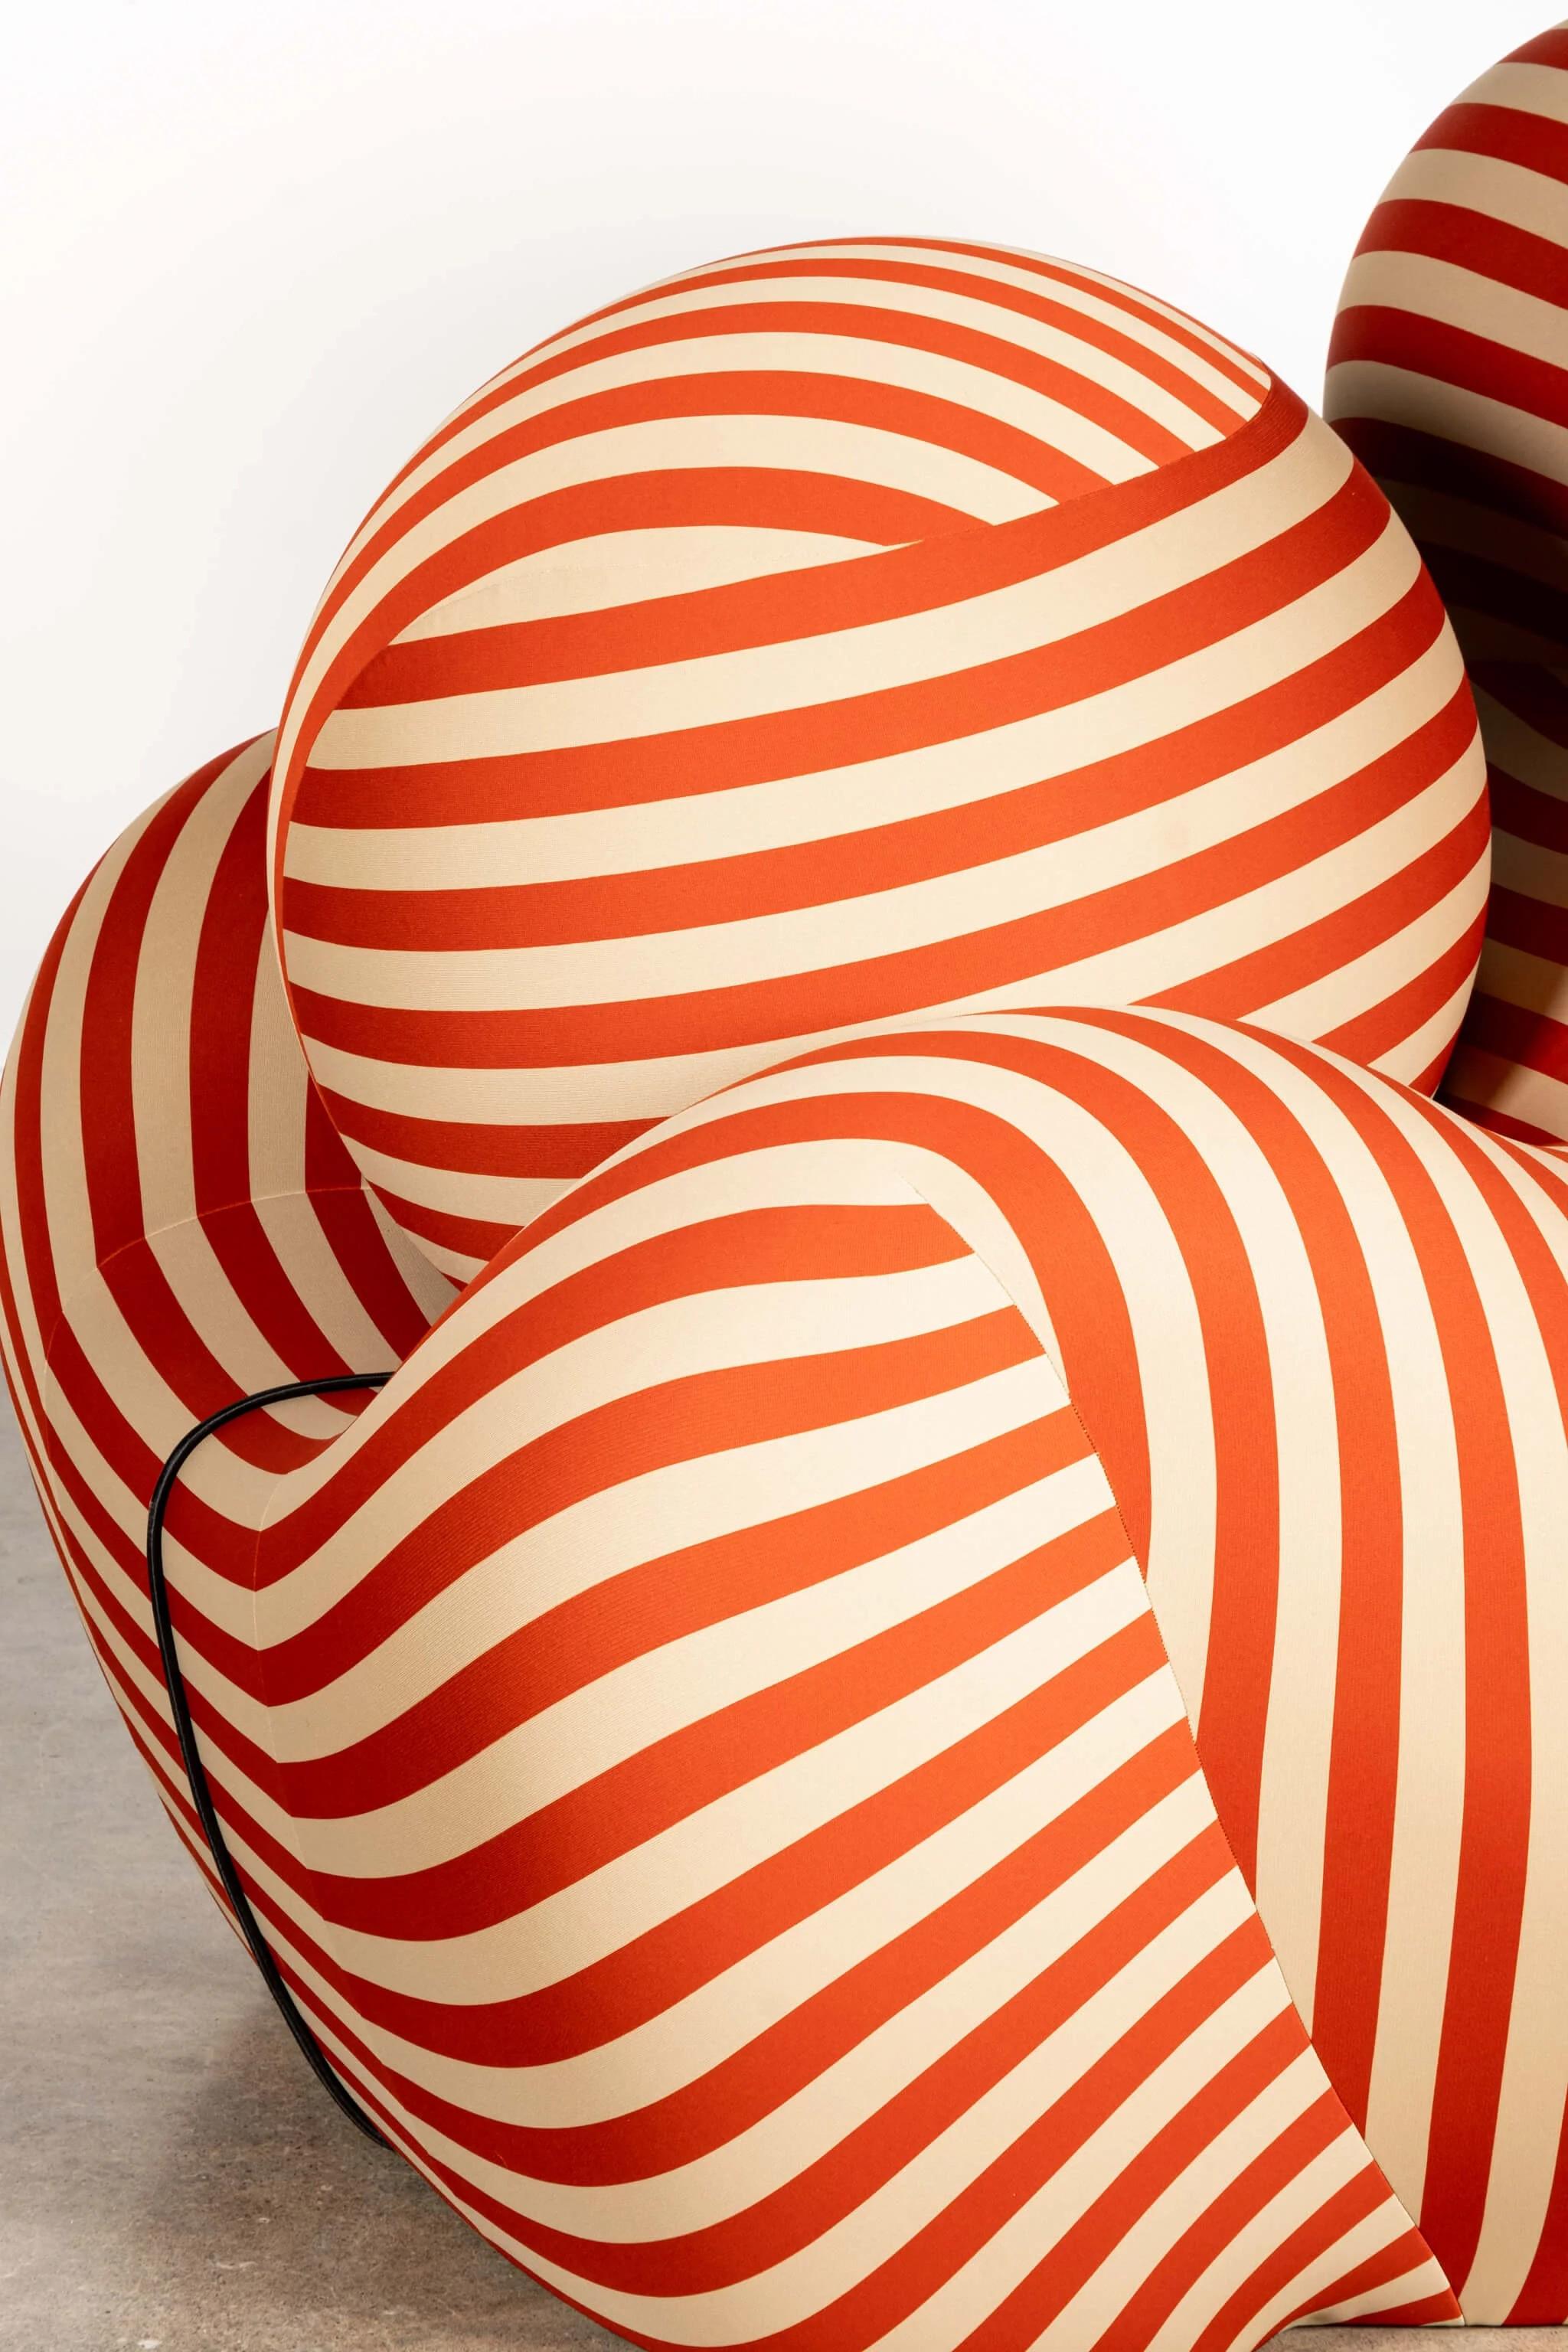 B&B Italia 'La Mamma' Up 5/6 Lounge Chair & Ottoman, Red Stripe by Gaetano Pesce For Sale 3